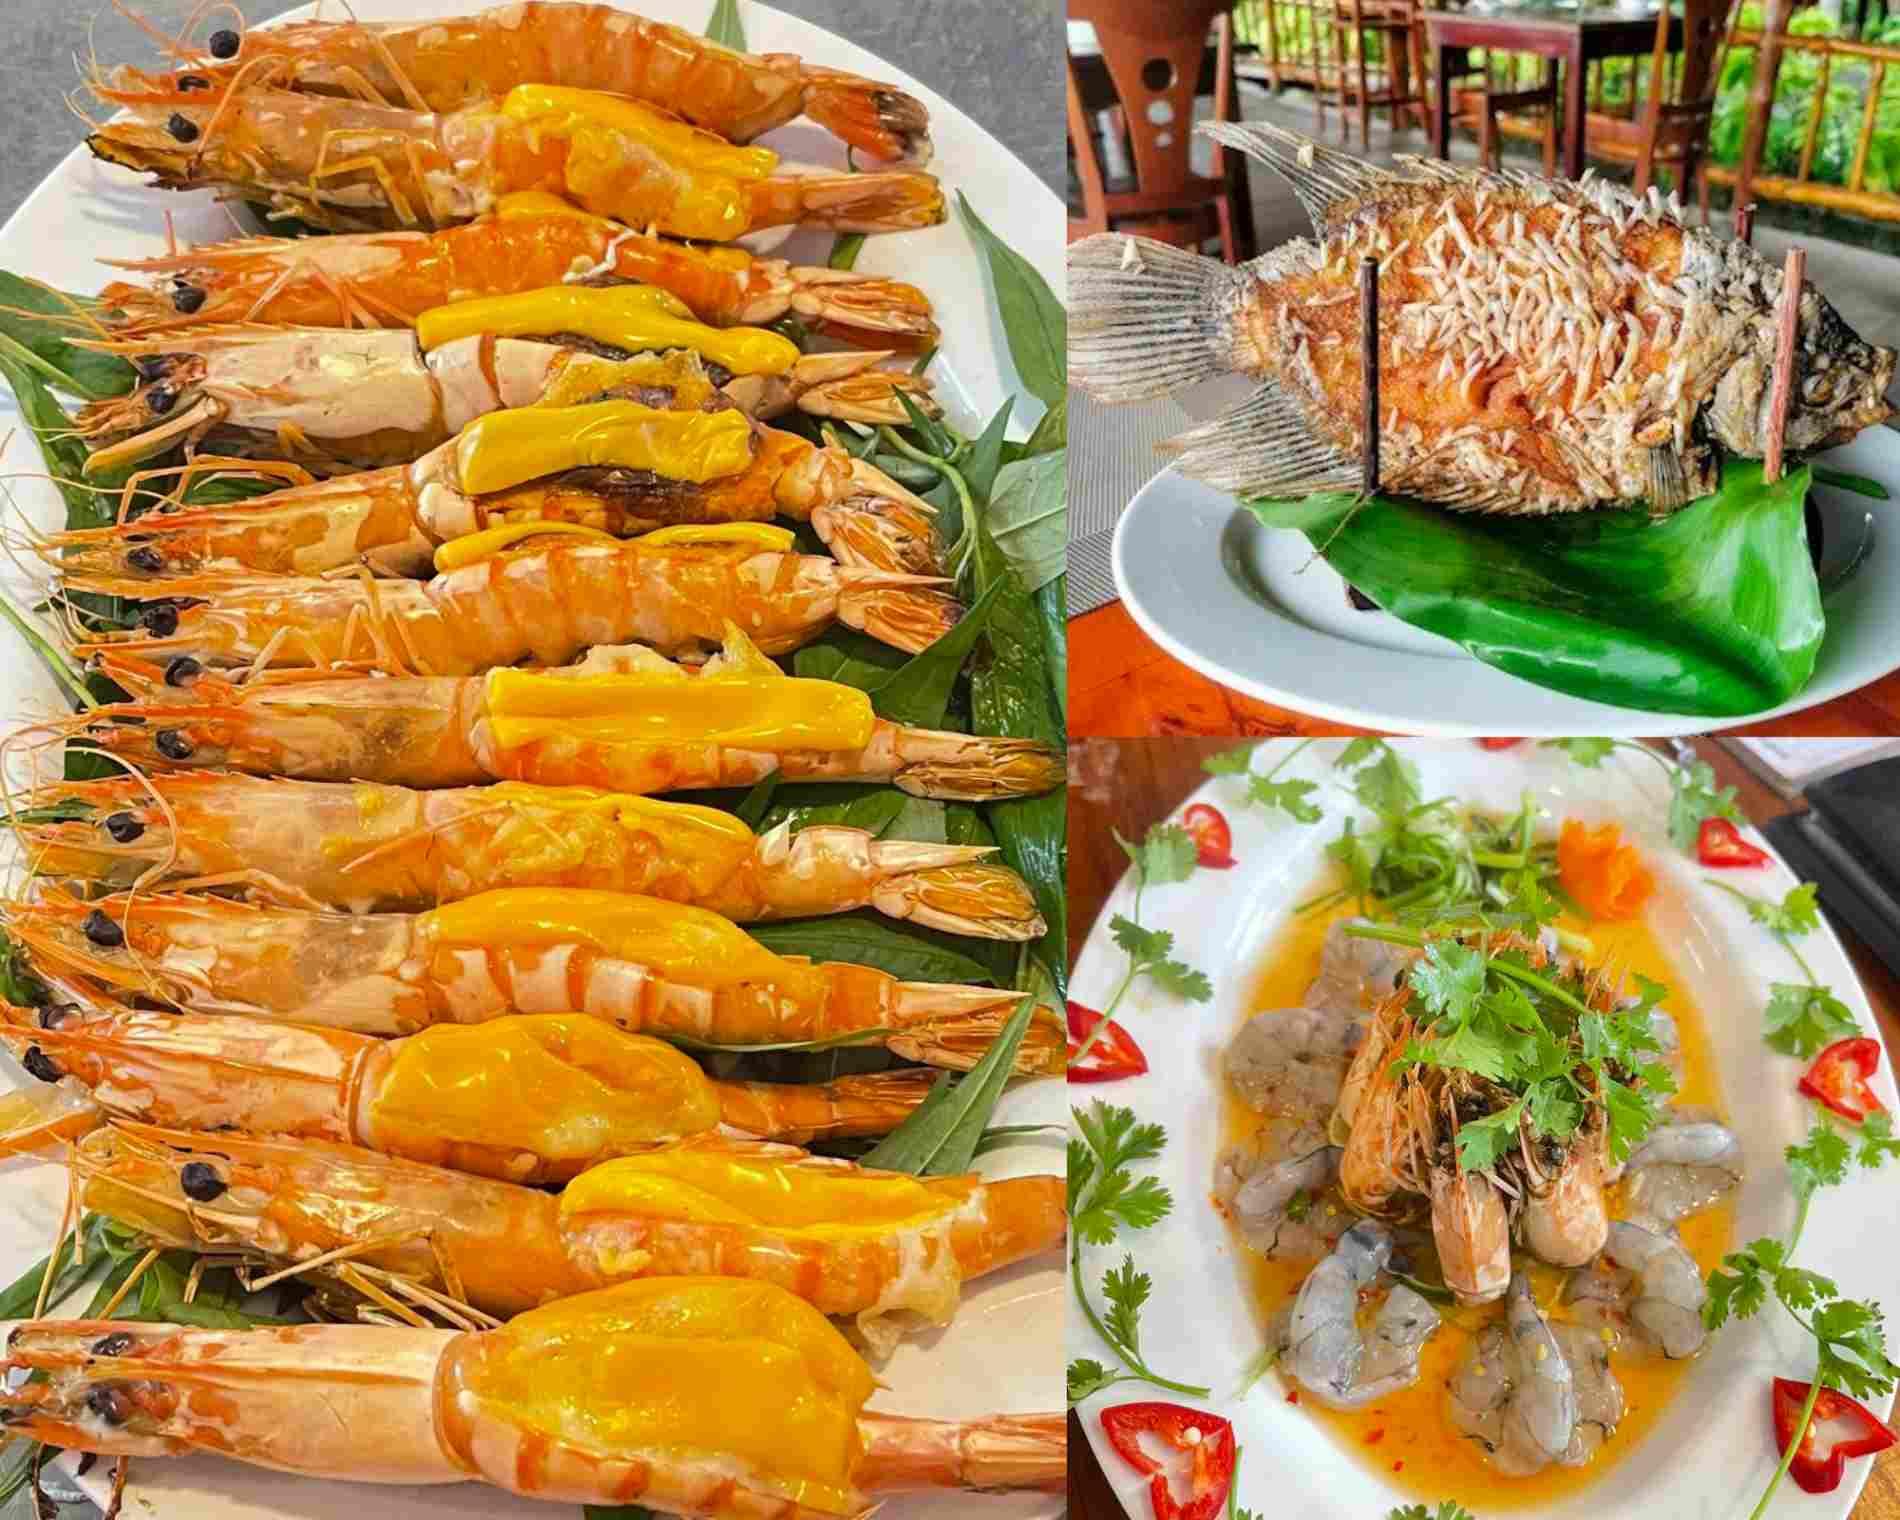 TOP 10 địa điểm ăn uống Biên Hòa “HOT” nhất hiện nay